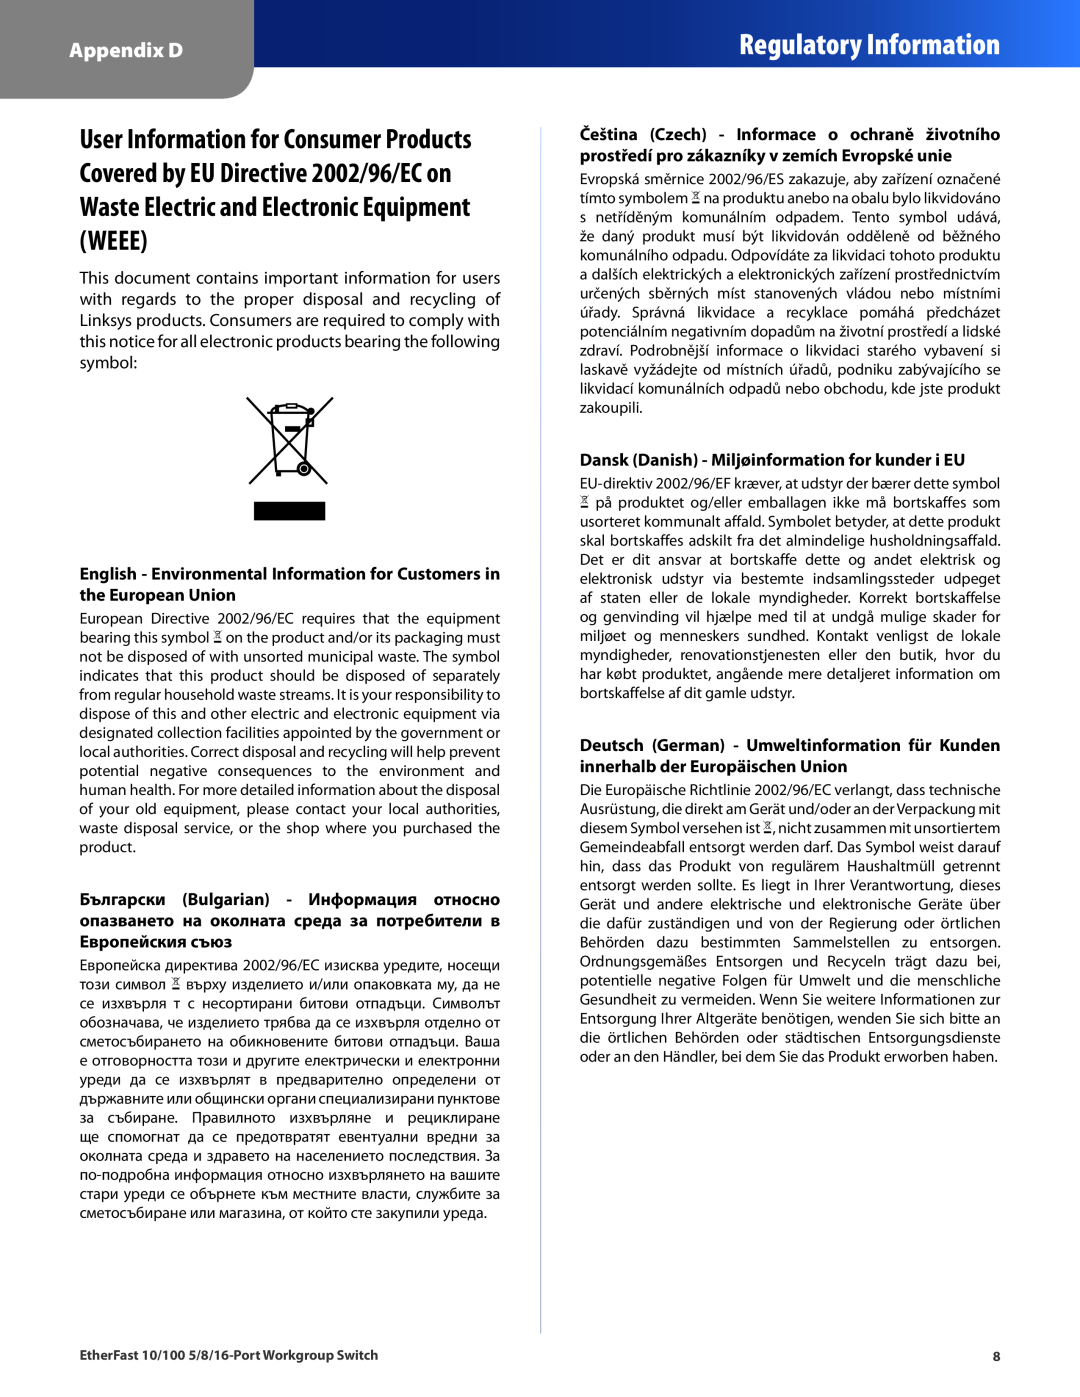 Linksys EZXS16W manual Regulatory Information, Appendix D, Dansk Danish - Miljøinformation for kunder i EU 